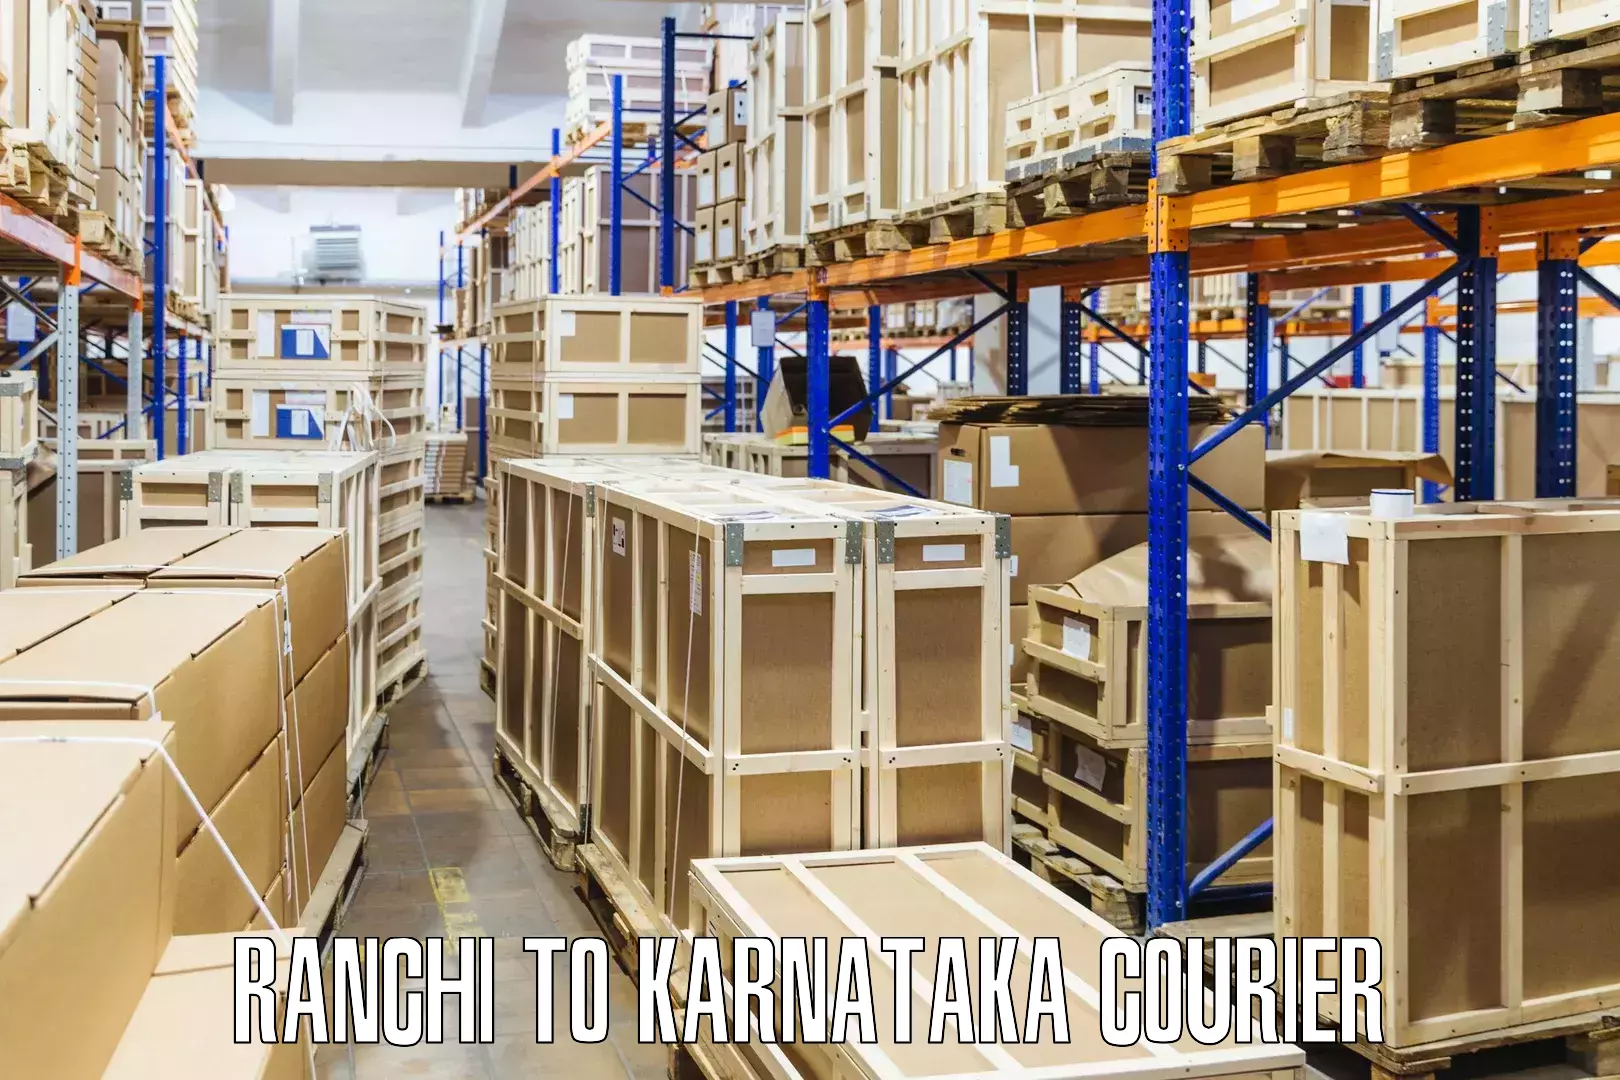 Digital courier platforms Ranchi to Karnataka